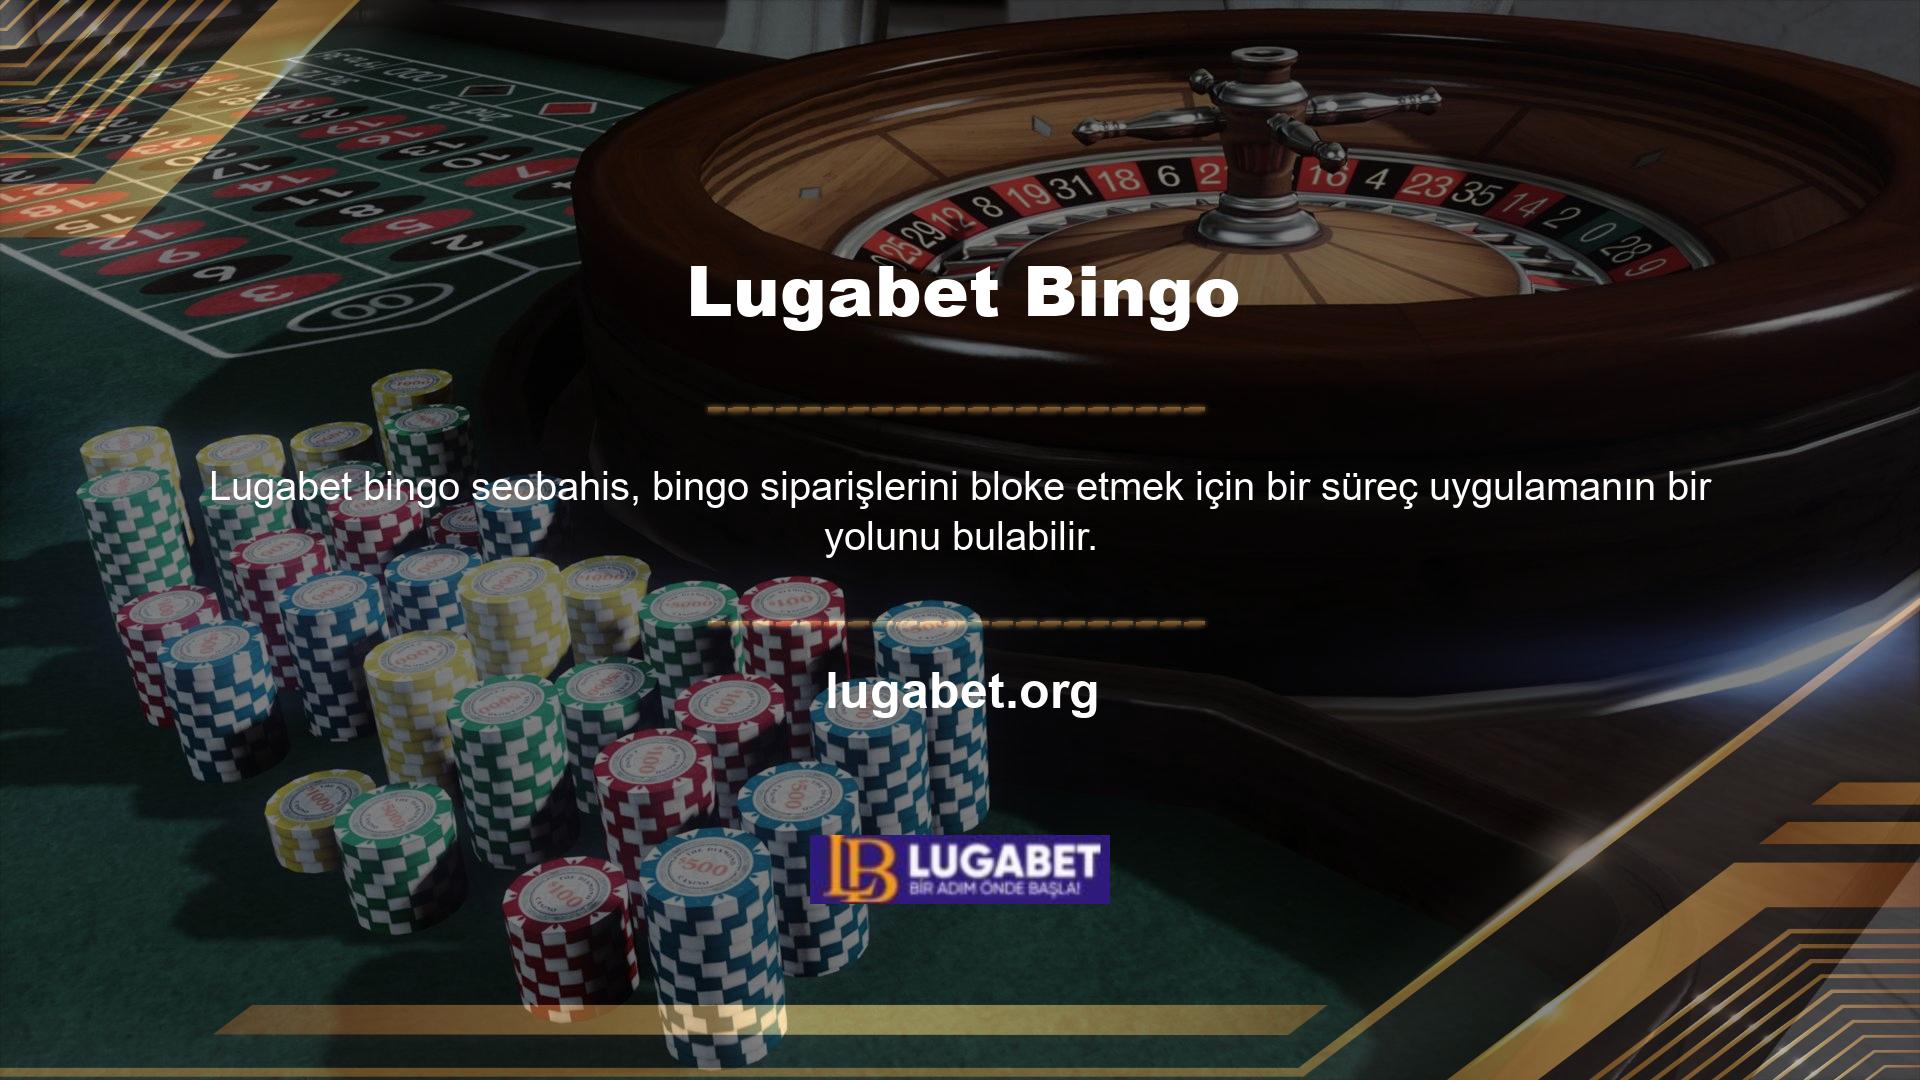 Lugabet, bingo, Lugabet ve diğer birçok detayın bulunduğu bir sitedir